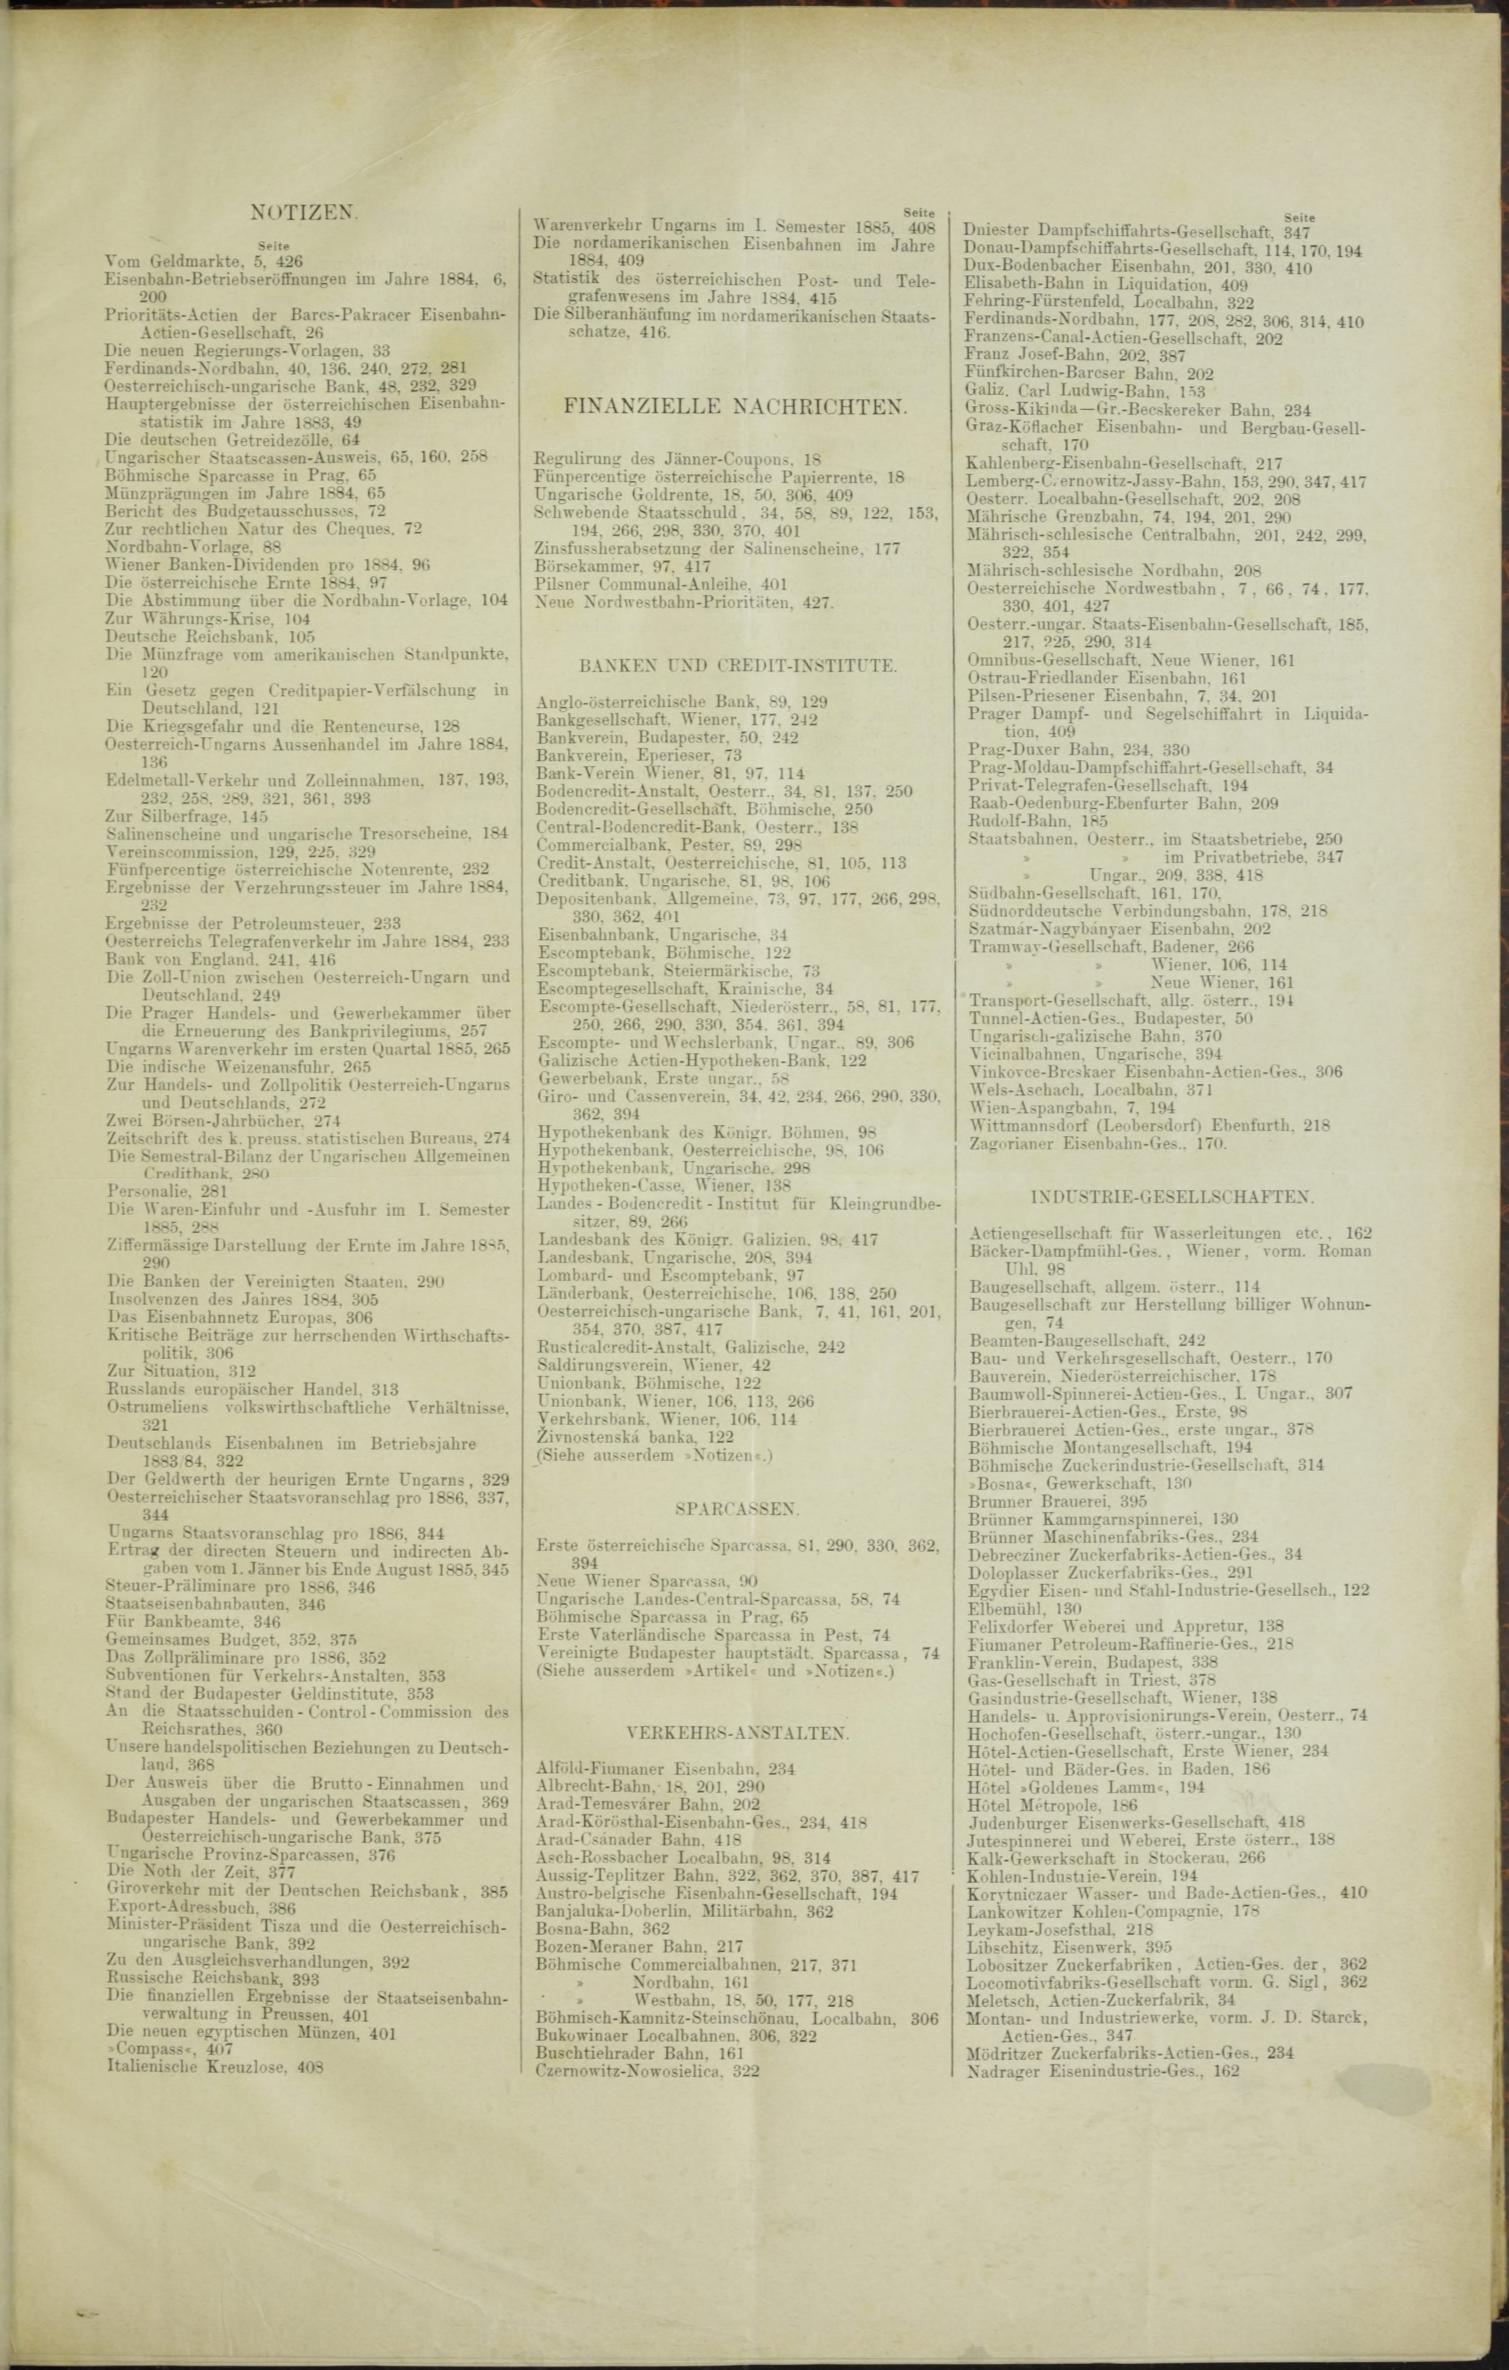 Der Tresor 07.05.1885 - Seite 11